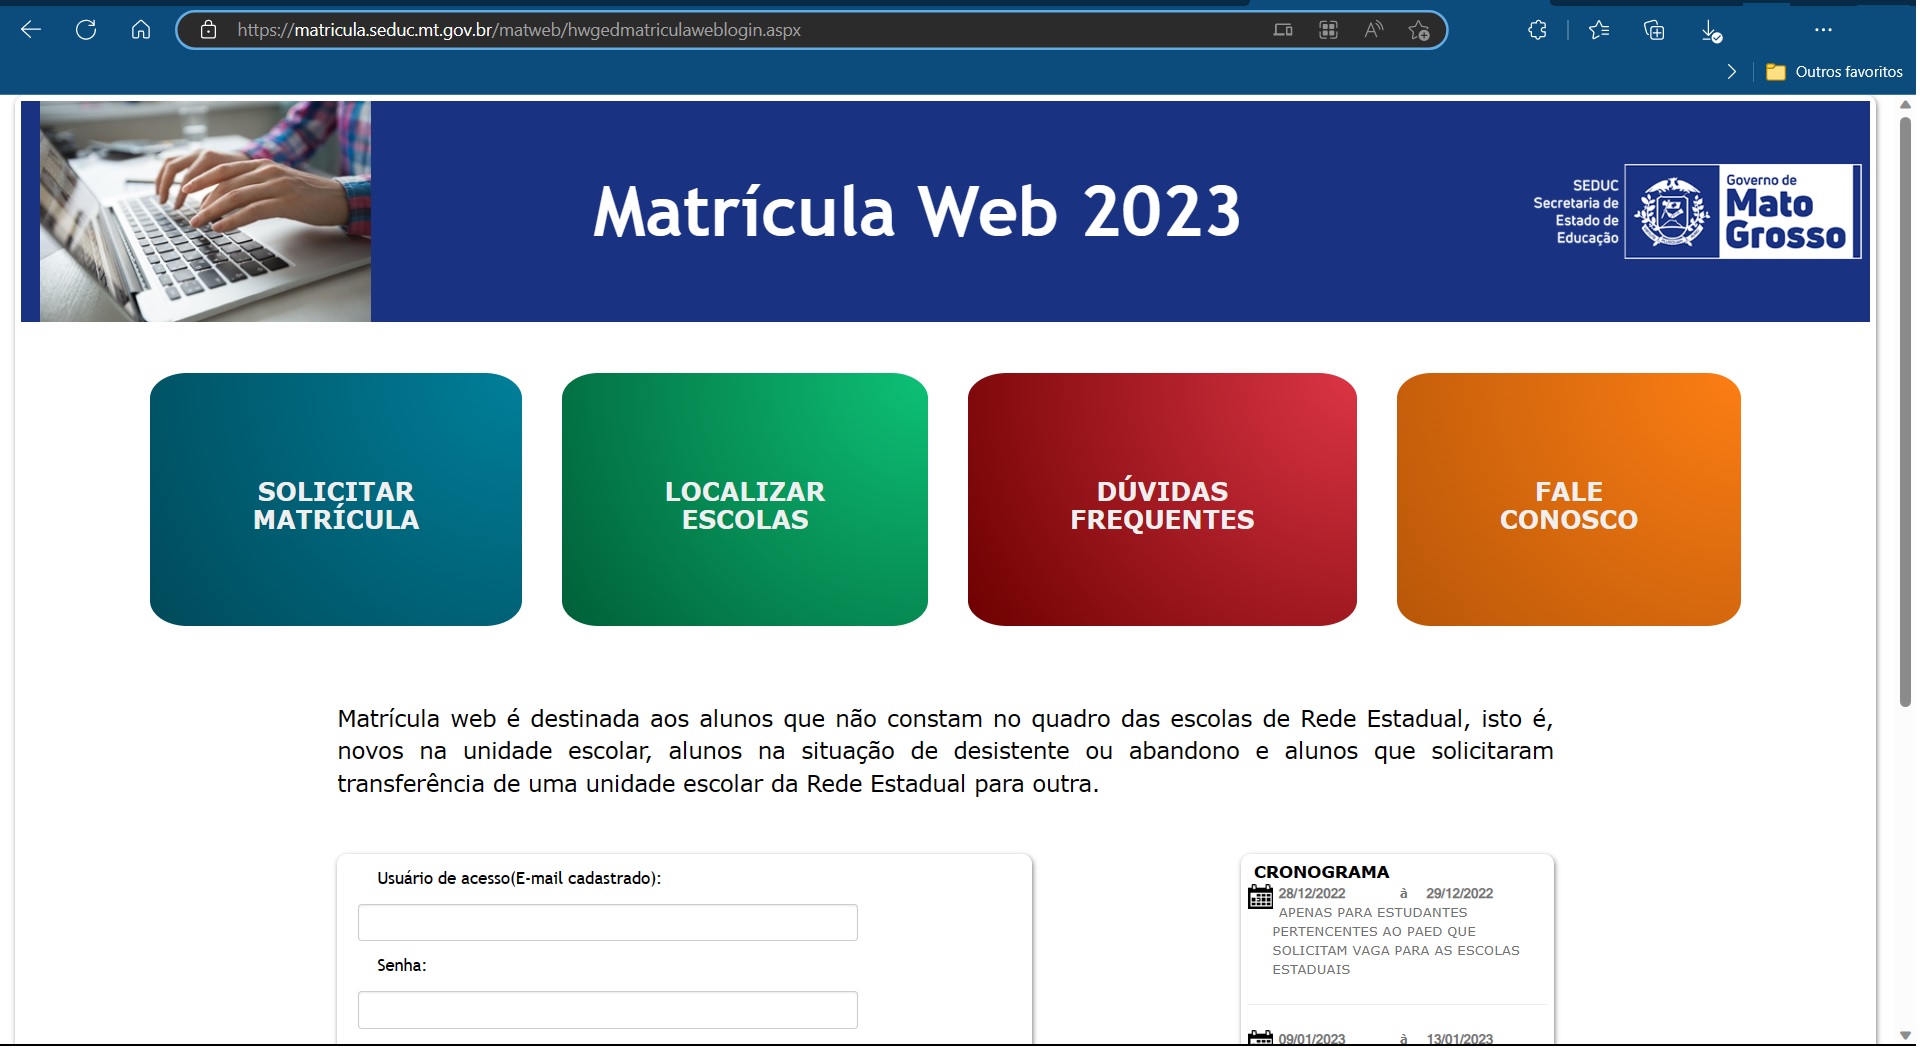 Portal Matrícula Web 